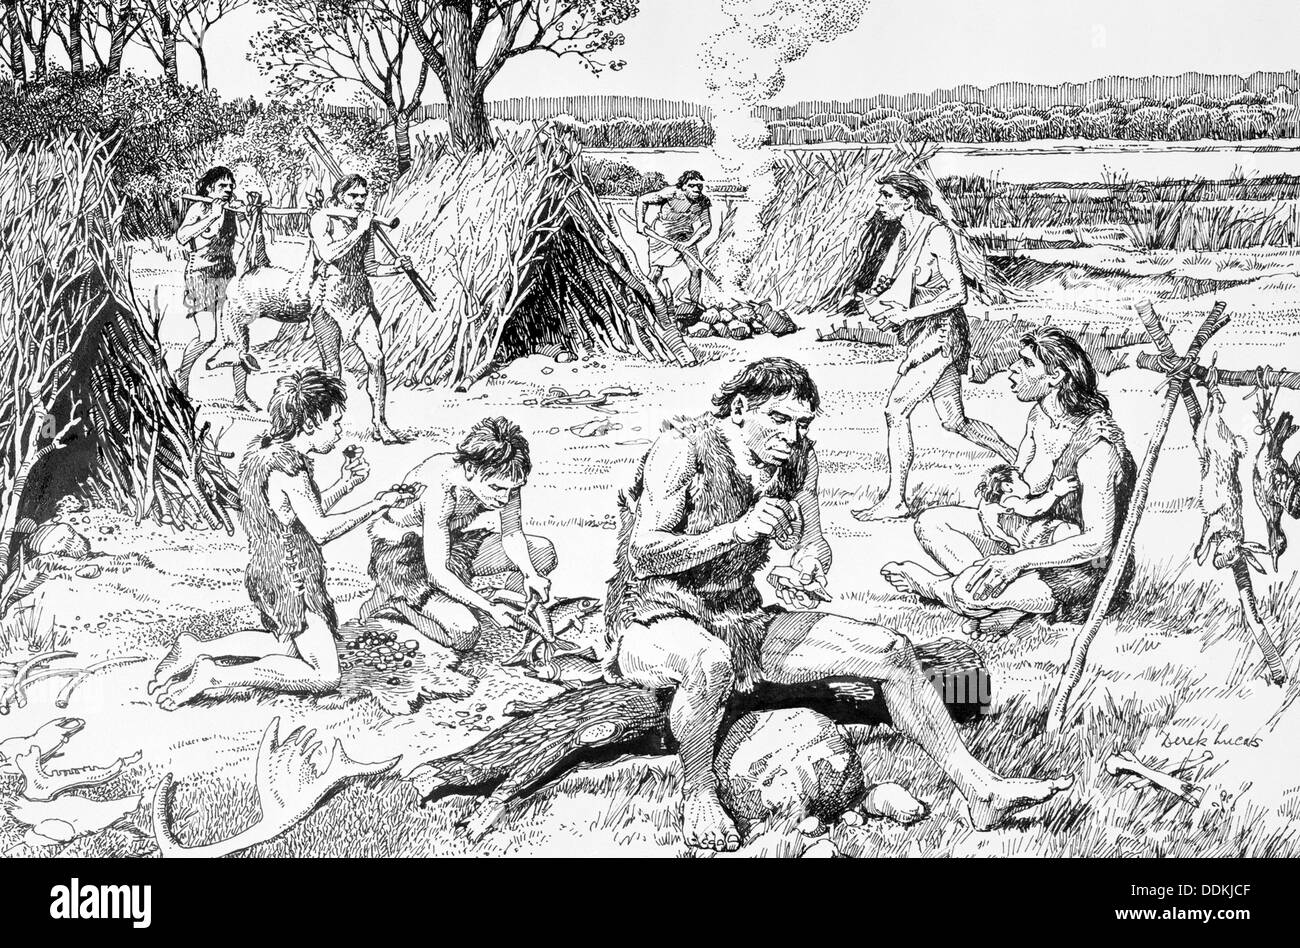 Prähistorischen Menschen in einer Siedlung, Swanscombe, Kent, c350, 000 BC. Künstler: Derek Lucas Stockfoto